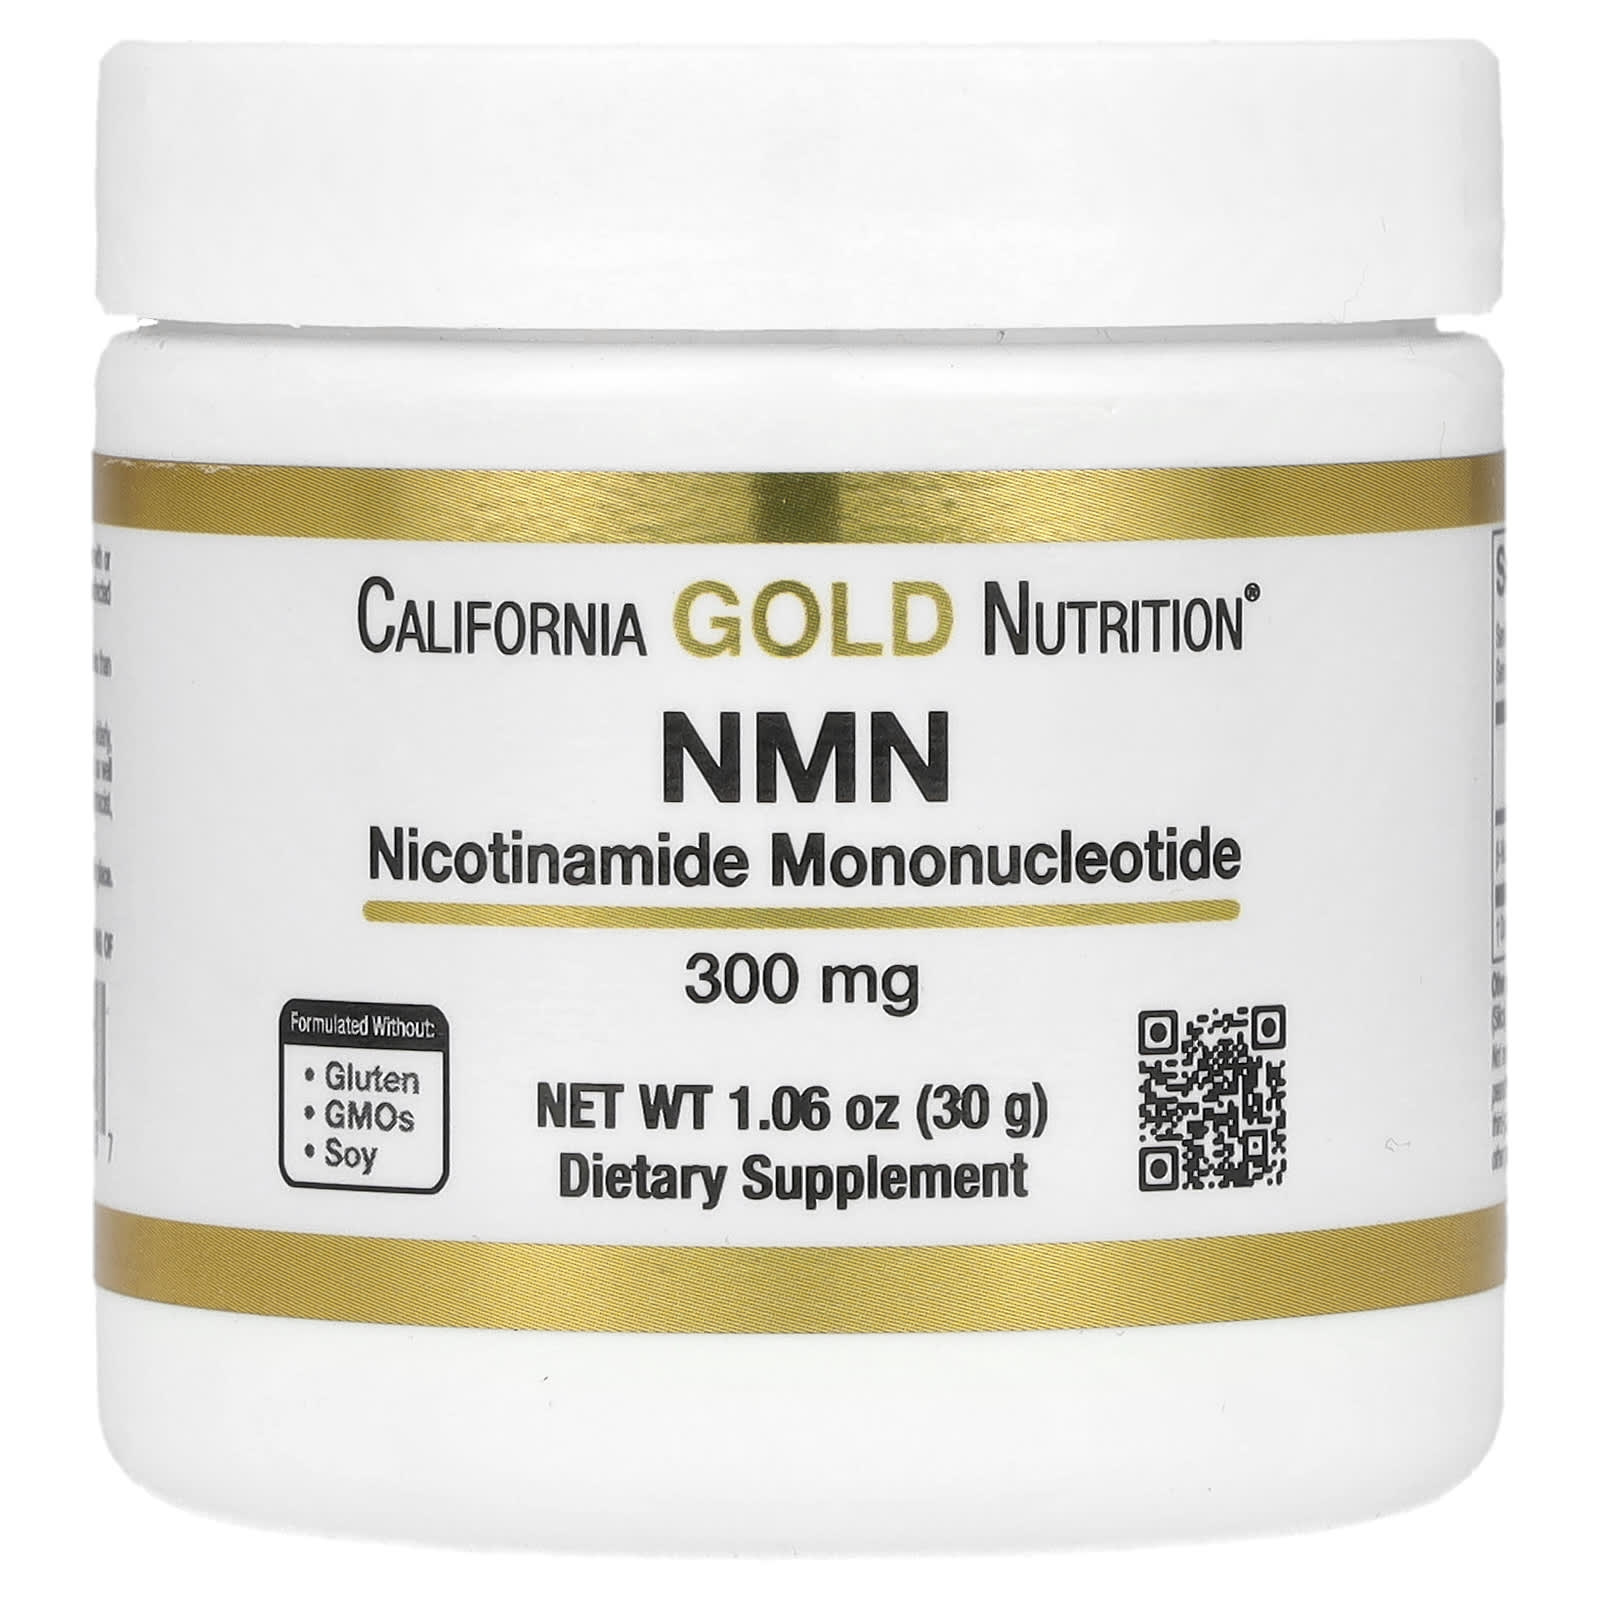 NMN（ニコチンアミドモノヌクレオチド）パウダー、300mg、30g（1.06 